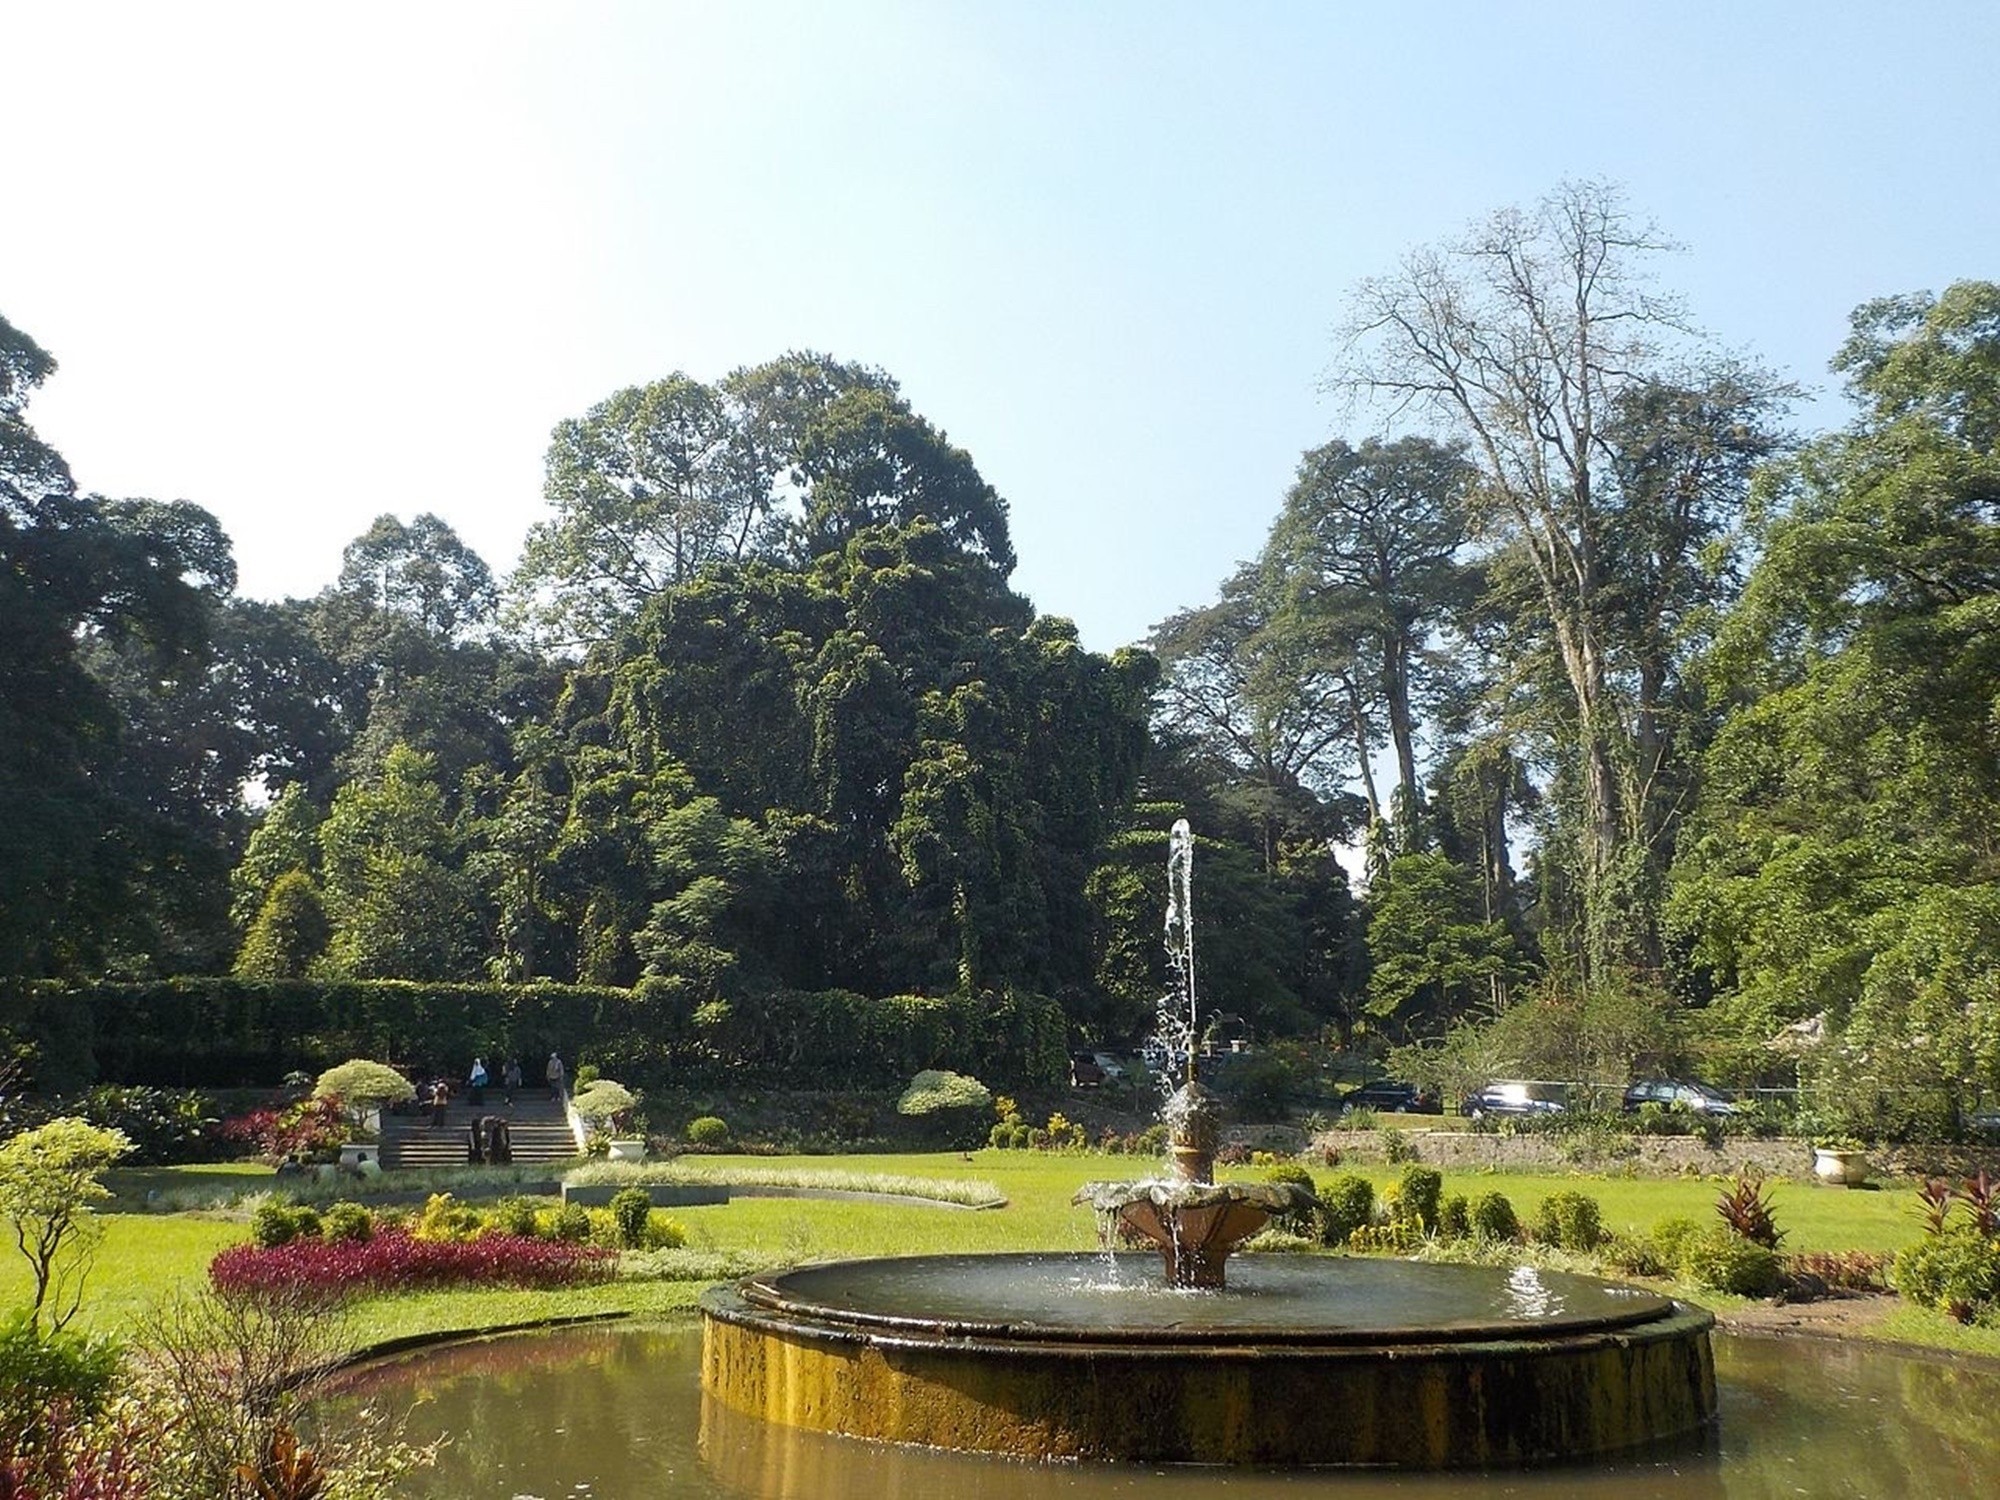 Indahnya taman di Kebun Raya Bogor salah satu pilihan taman terlengkap tempat wisata di Bogor